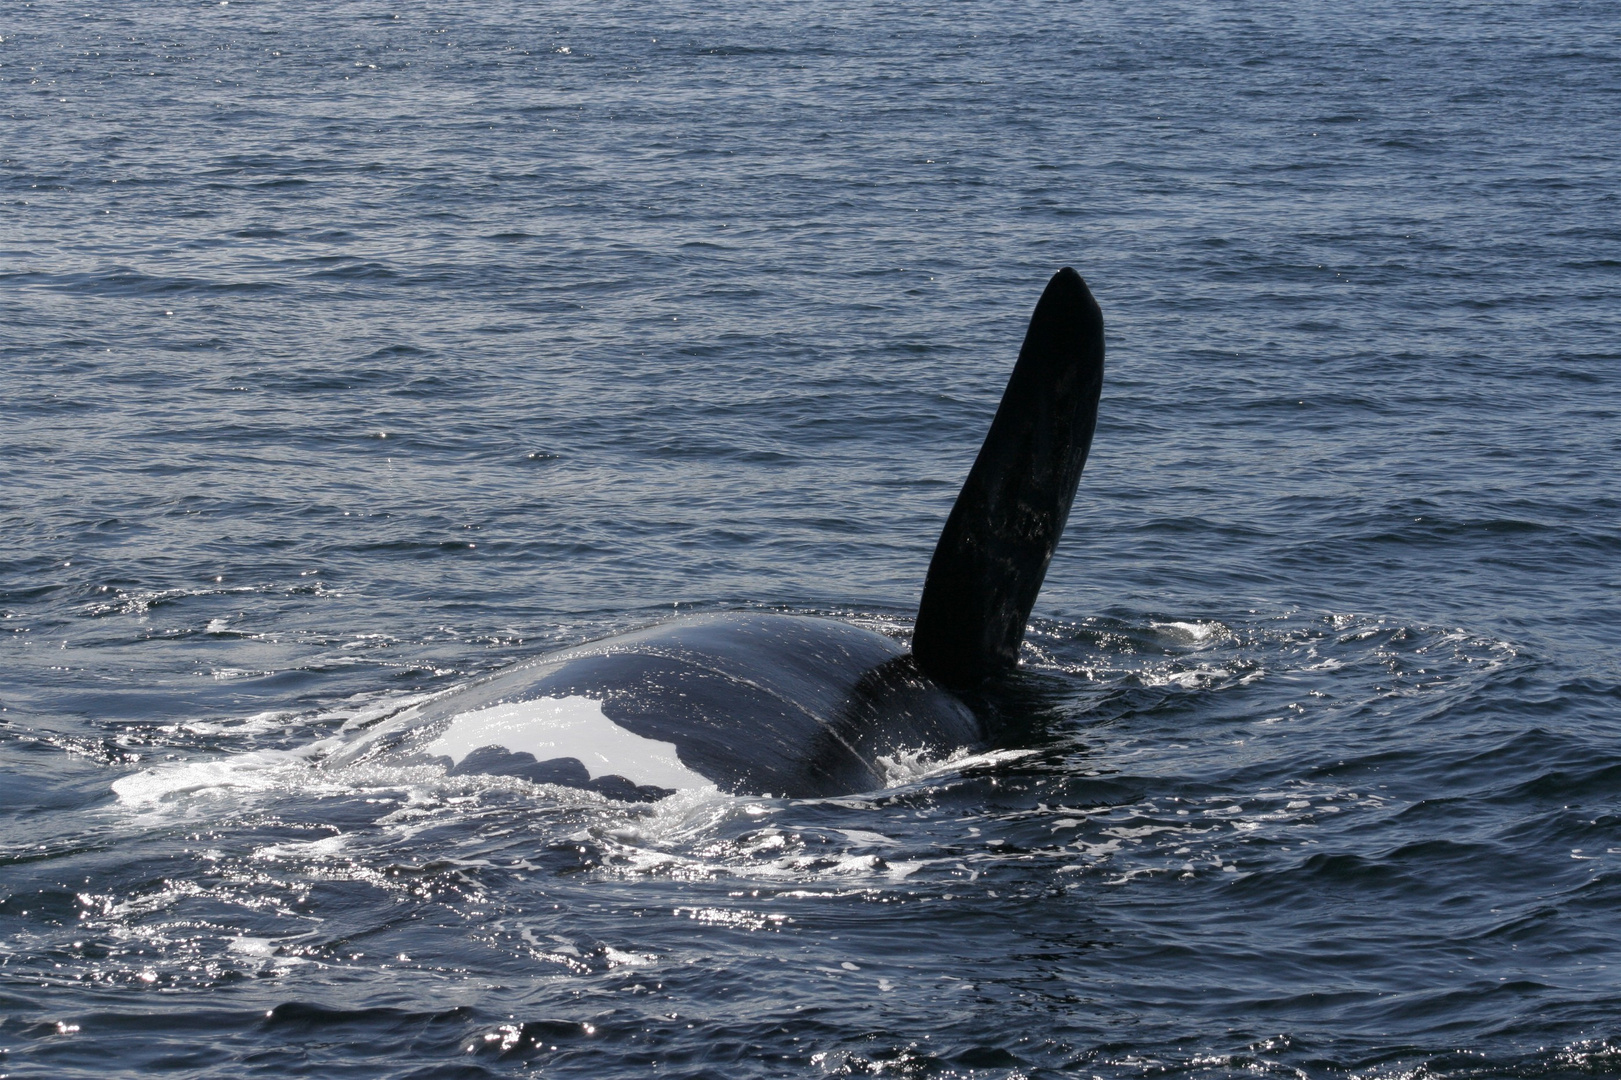 un grand tour de baleine à bosse